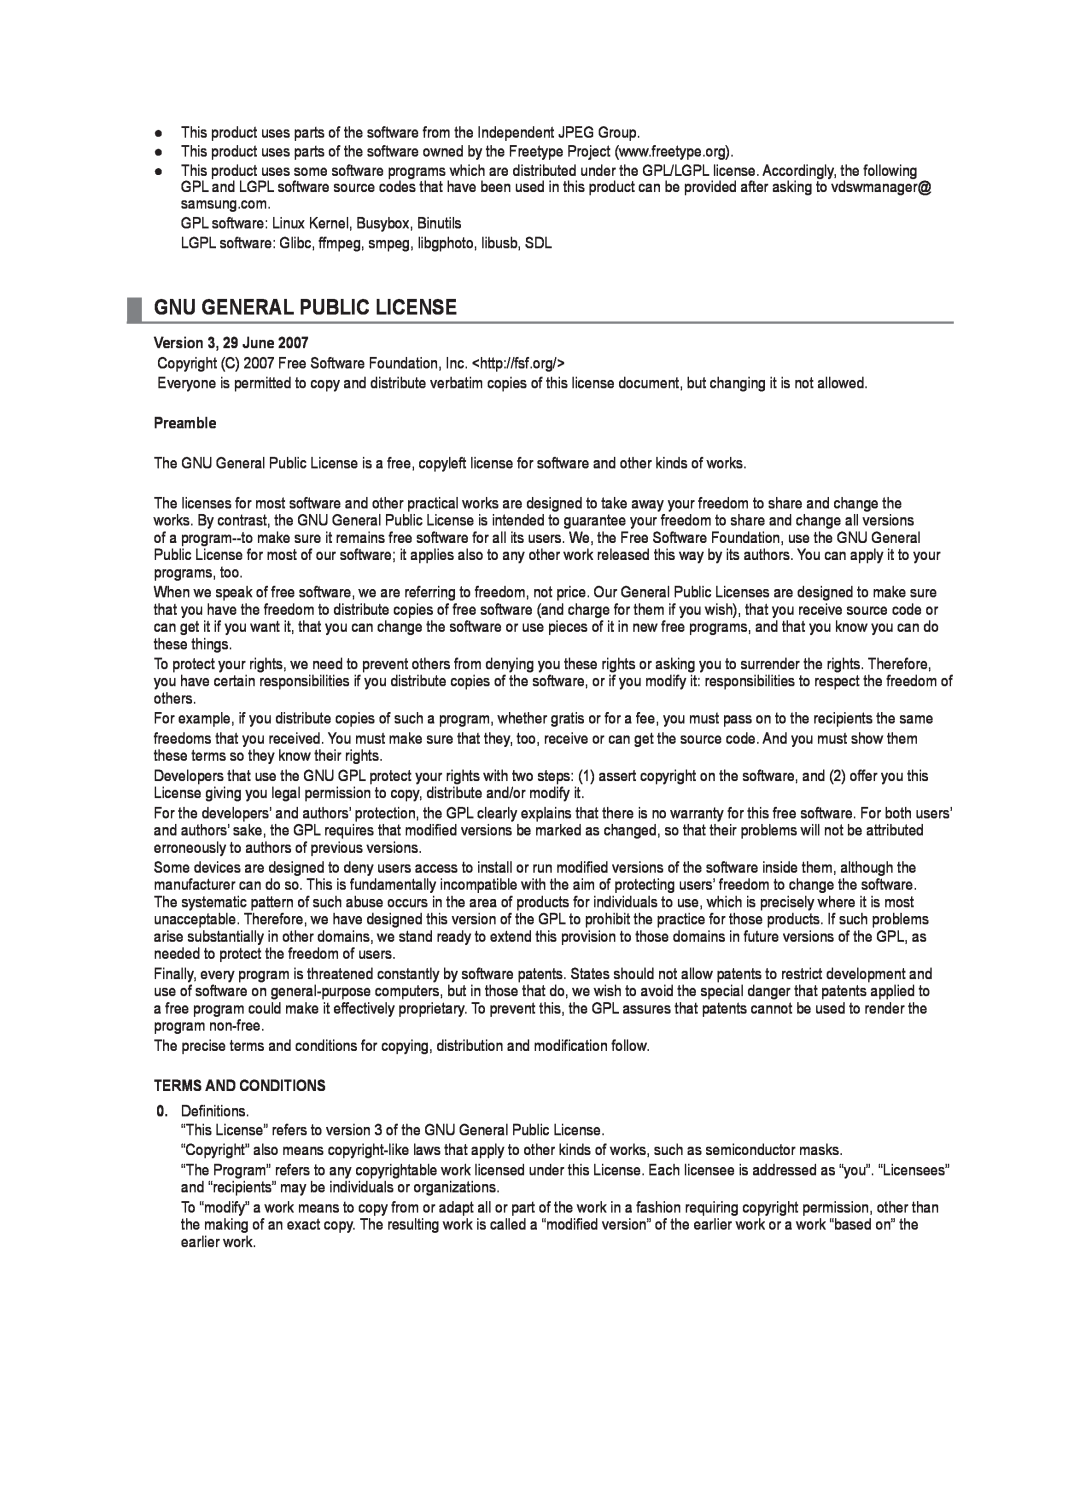 Samsung LA40B750U1R, LA52B750U1R user manual Gnu General Public License, Version 3, 29 June, Preamble, Terms And Conditions 